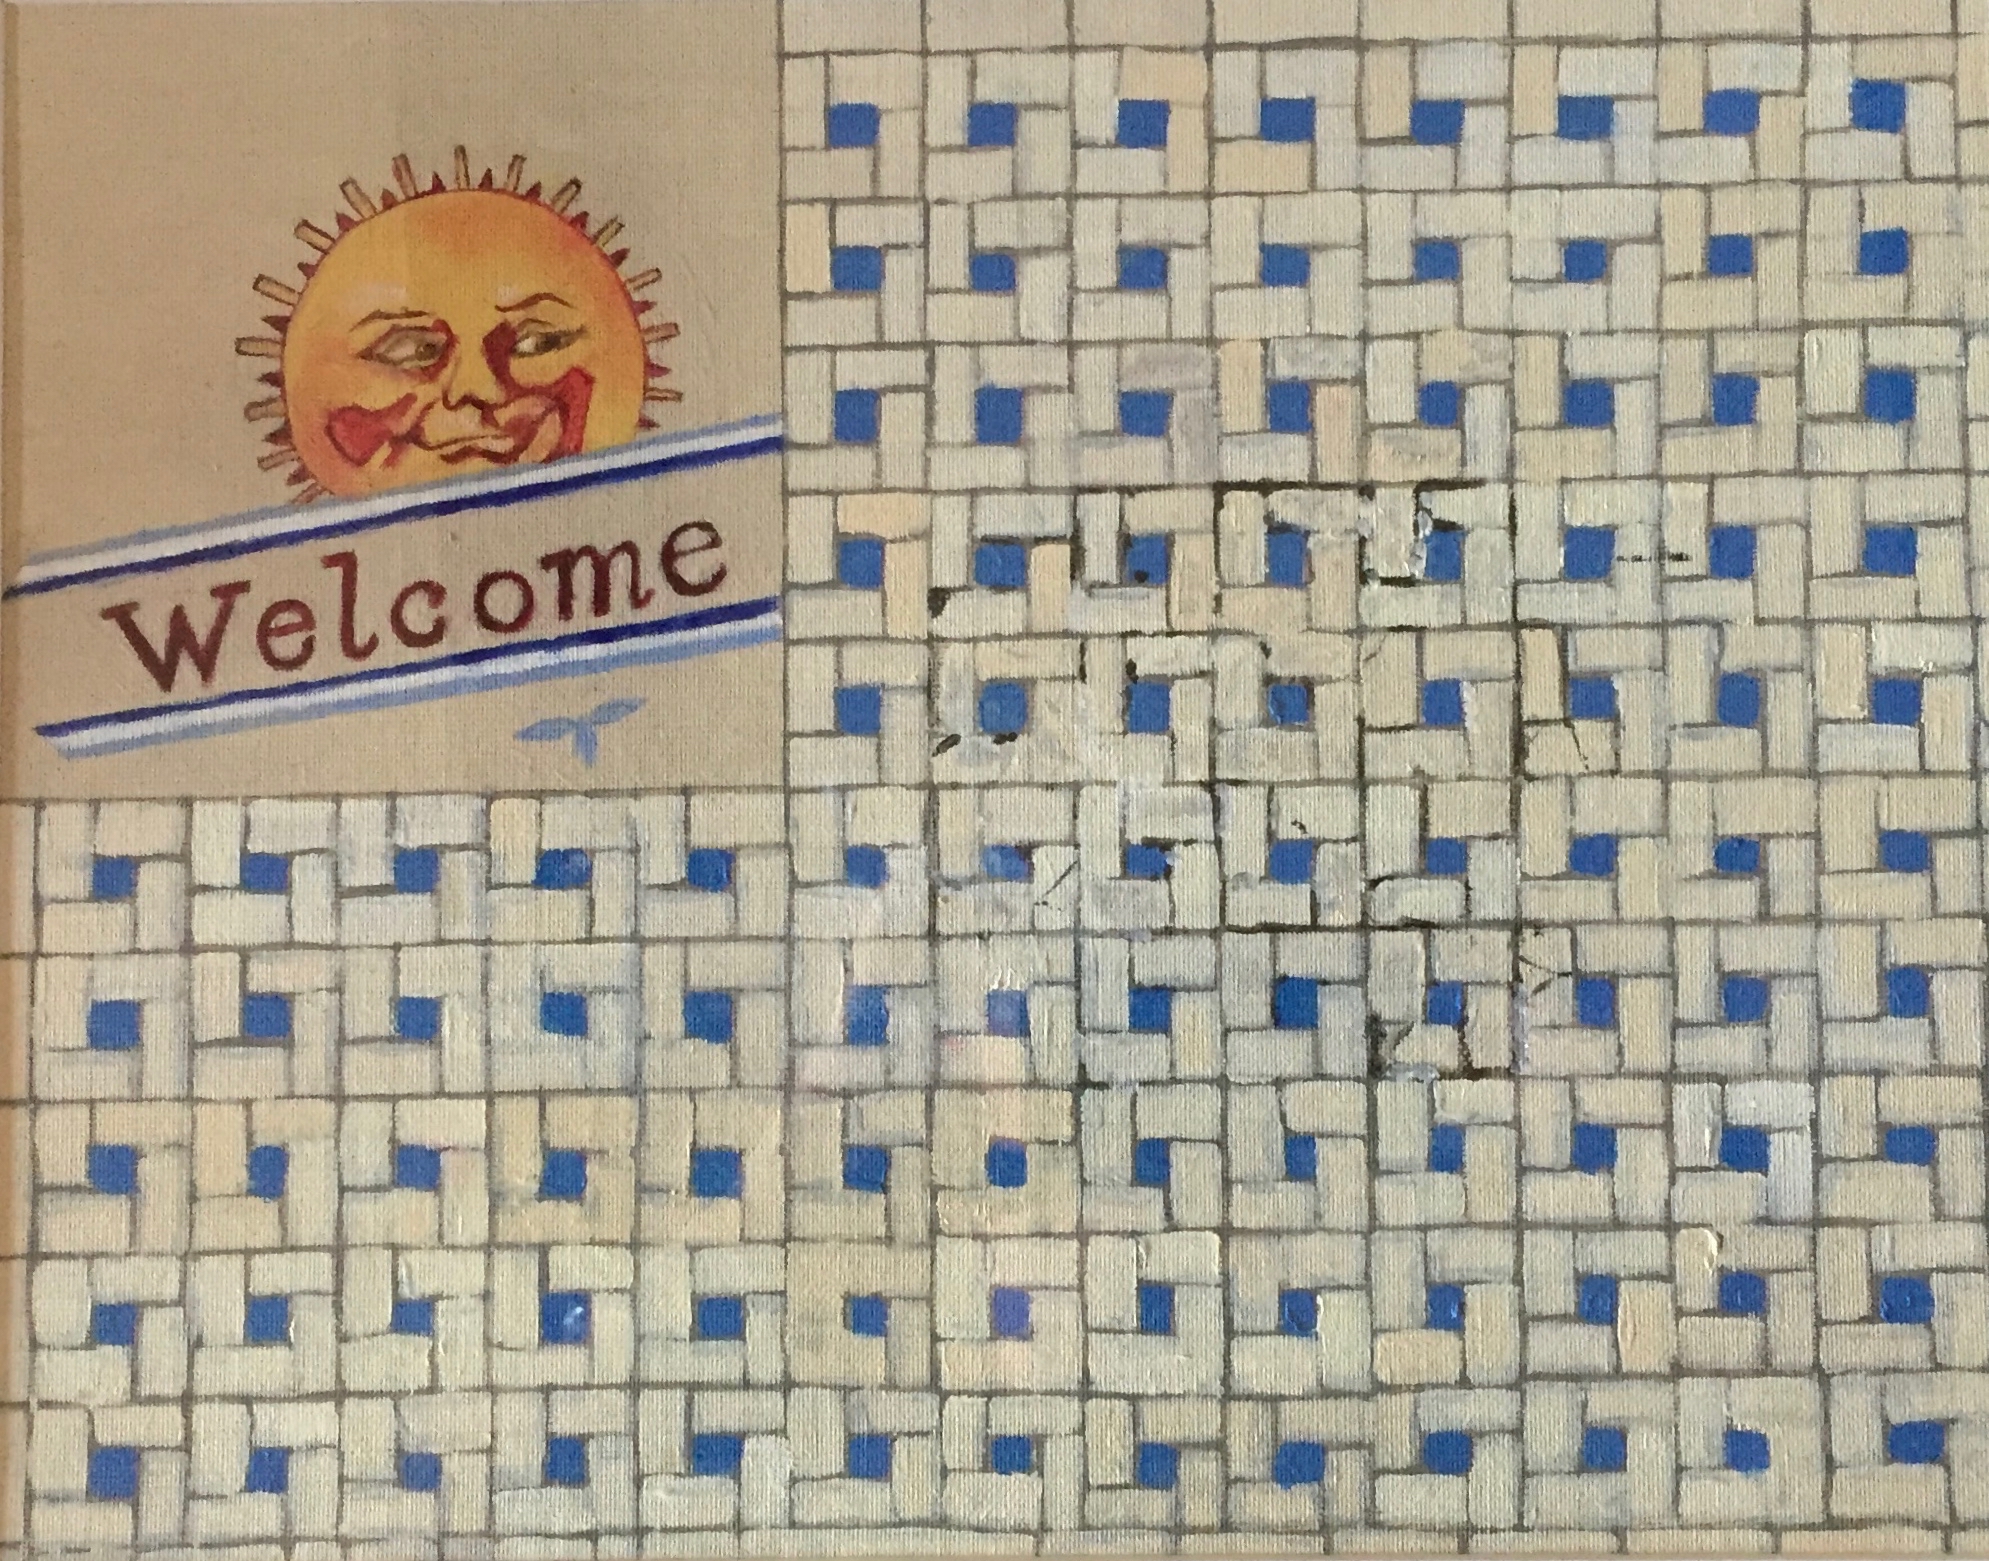 Barton Springs welcome tile